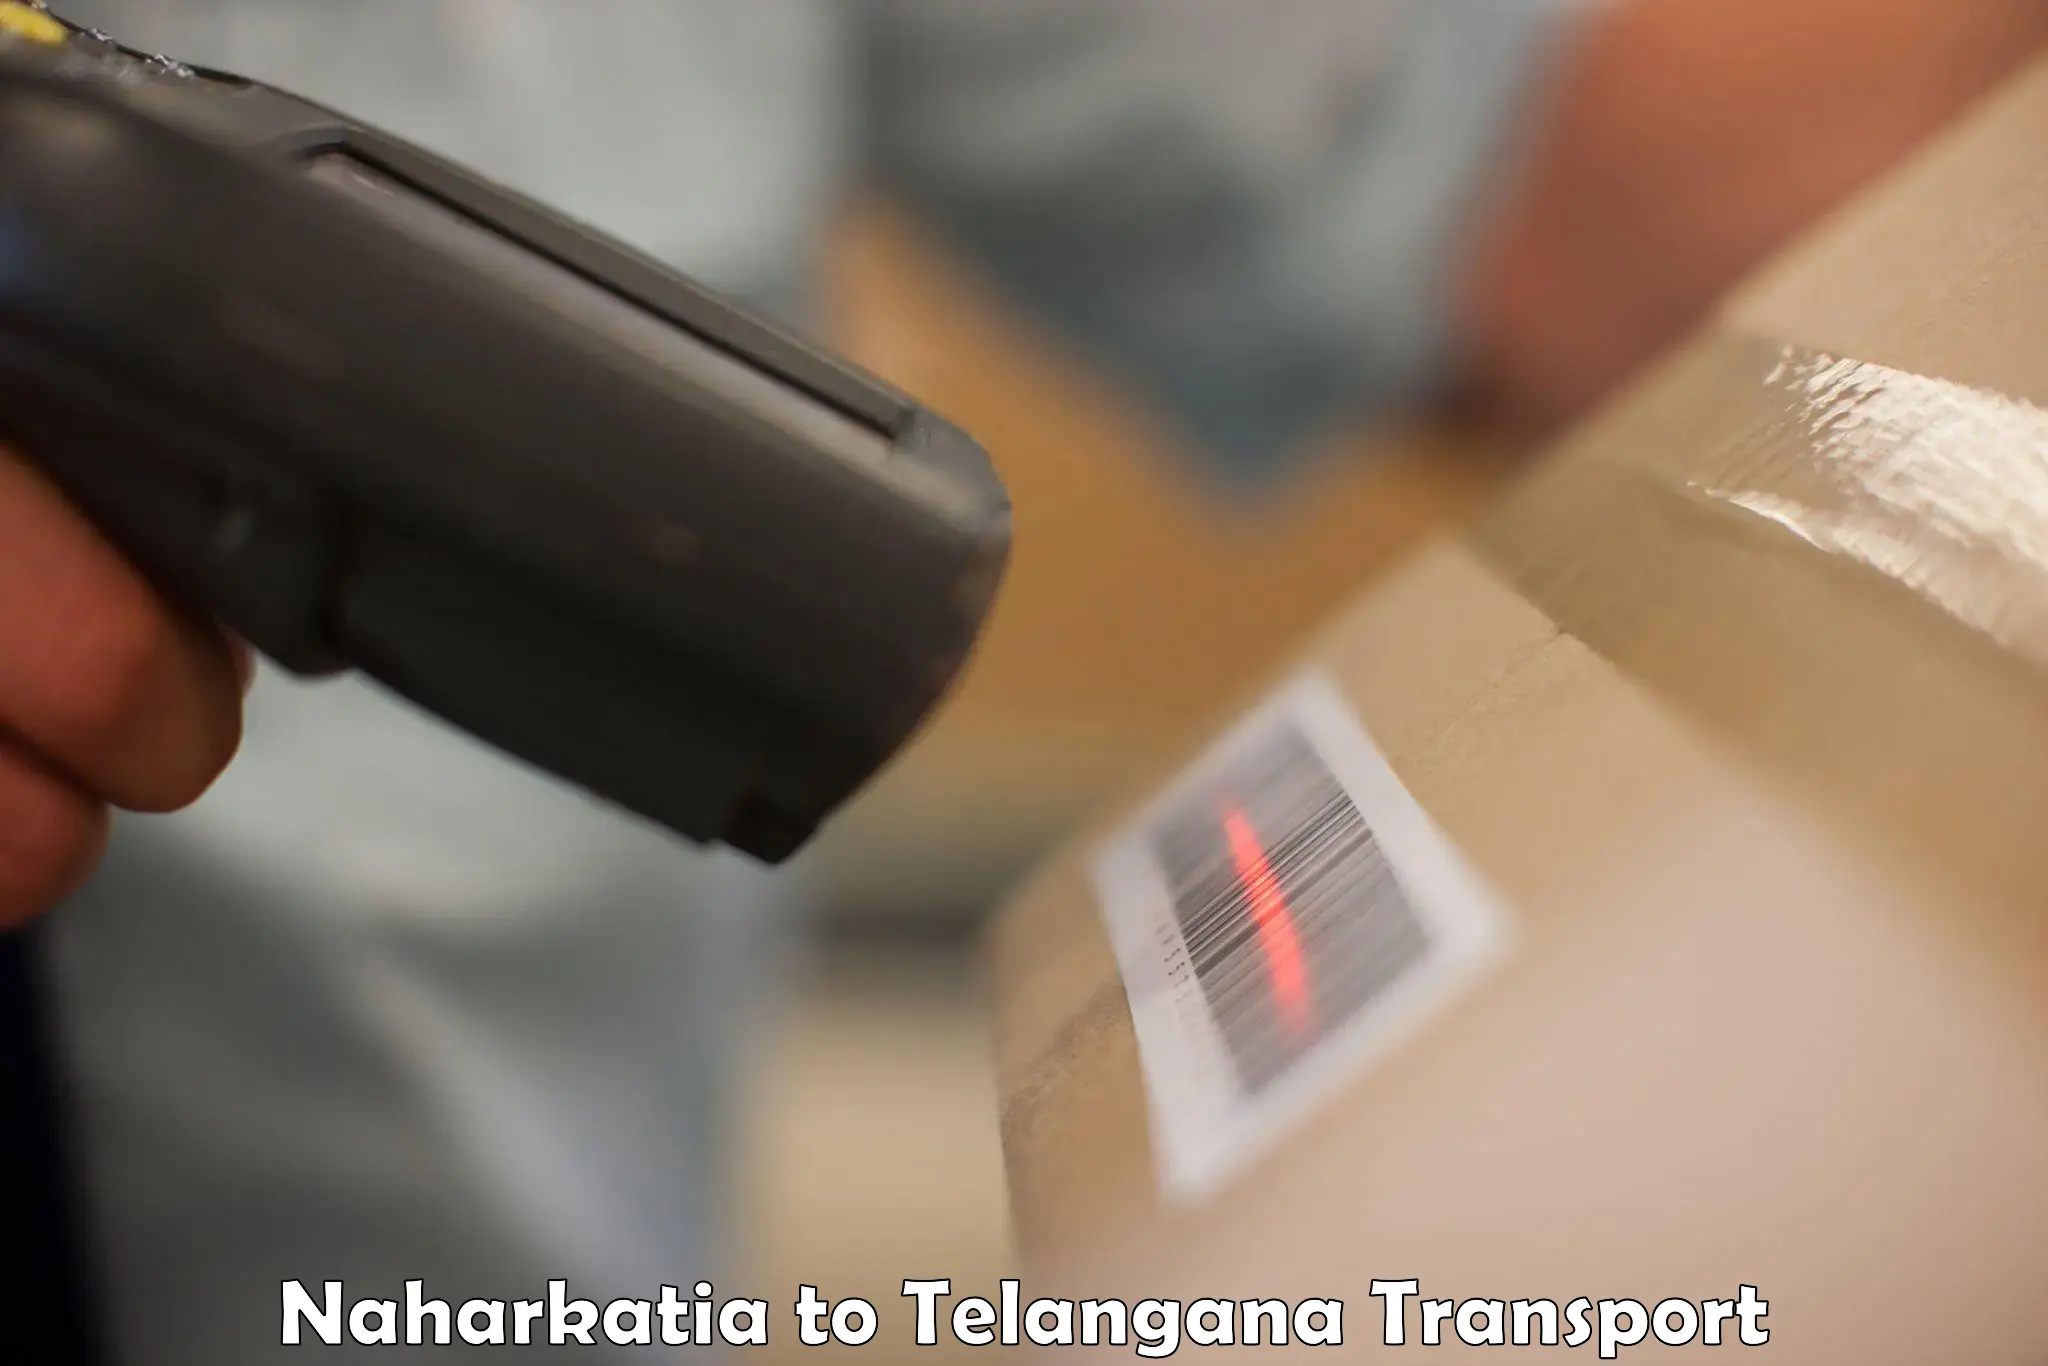 Air freight transport services Naharkatia to Telangana